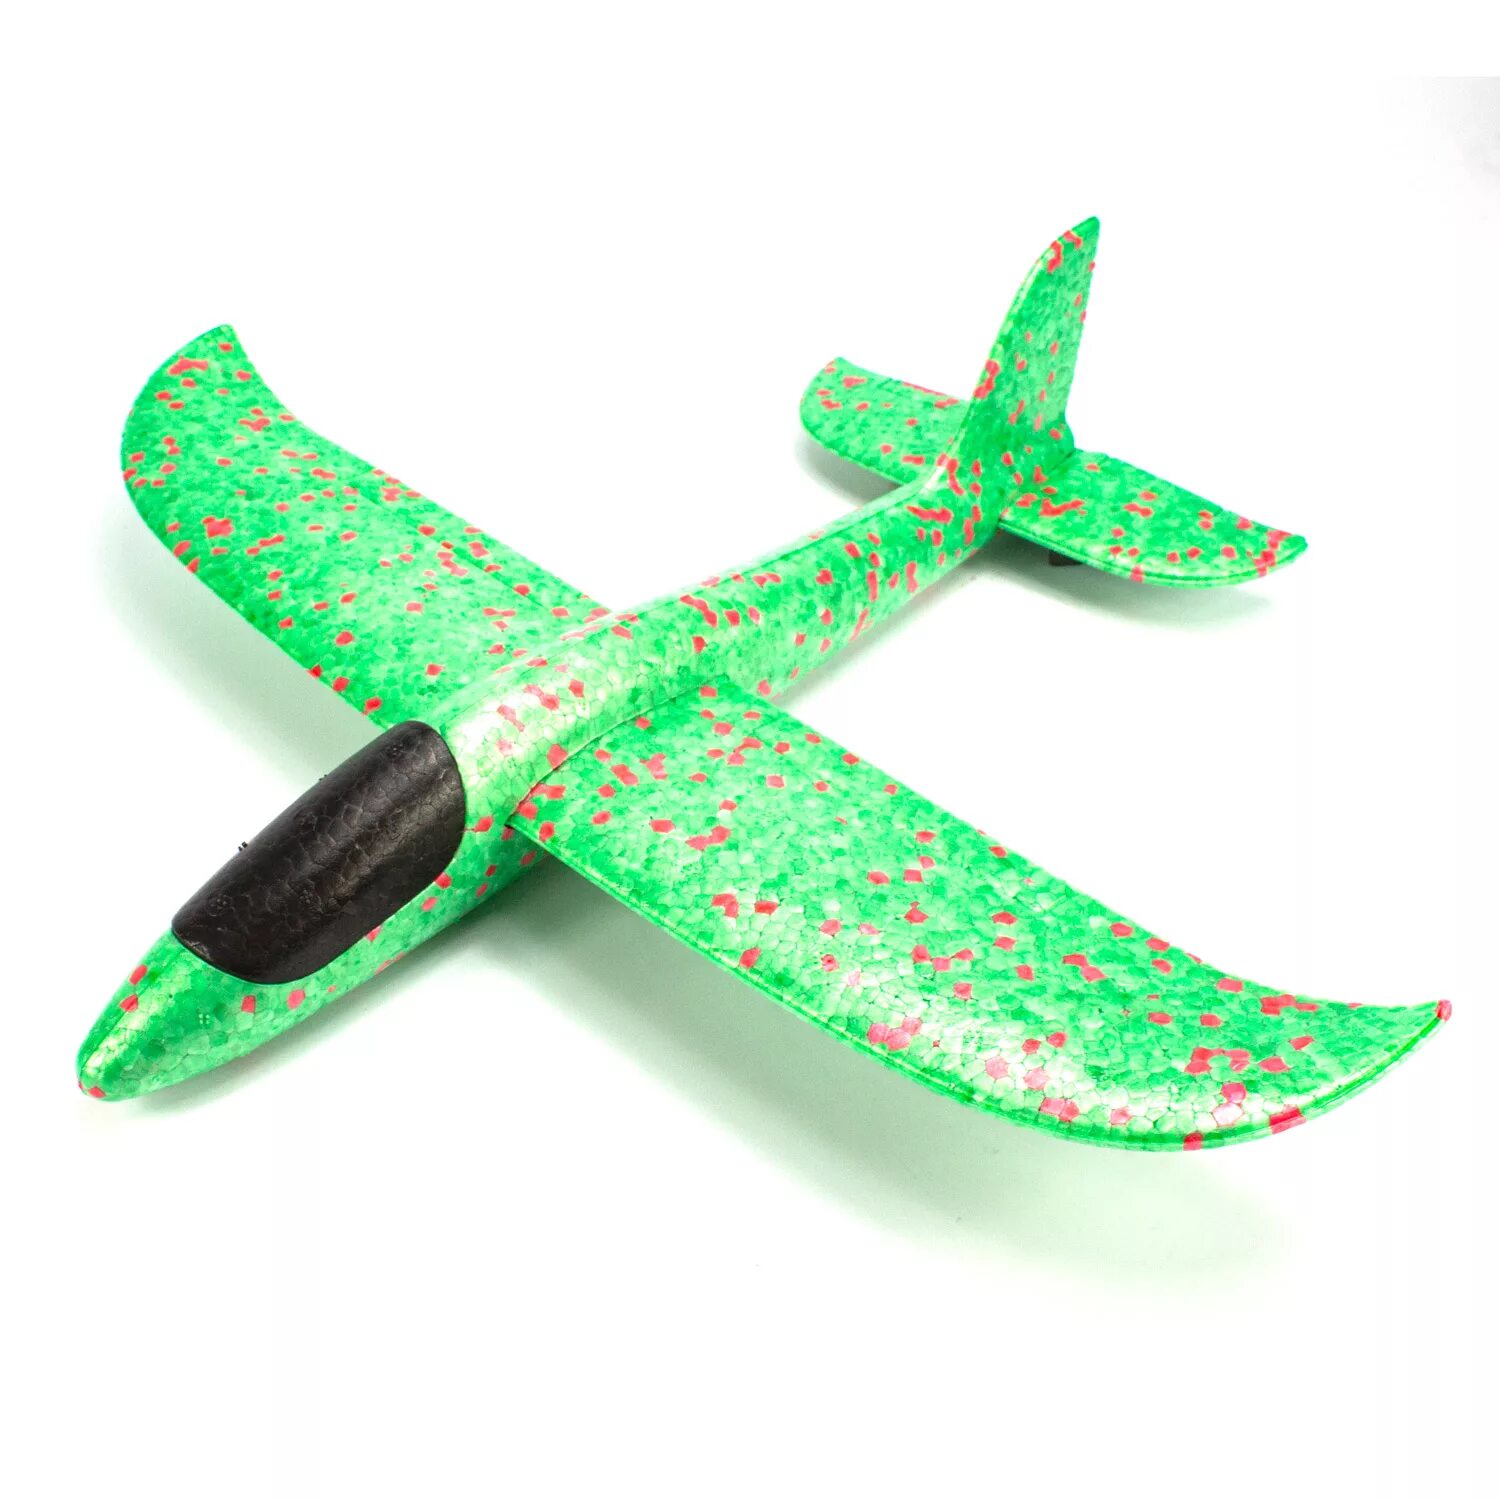 Как можно купить самолет. Самолет из пенопласта. Игрушка "самолет". Пенопластовый самолет игрушка. Планер из пенопласта.